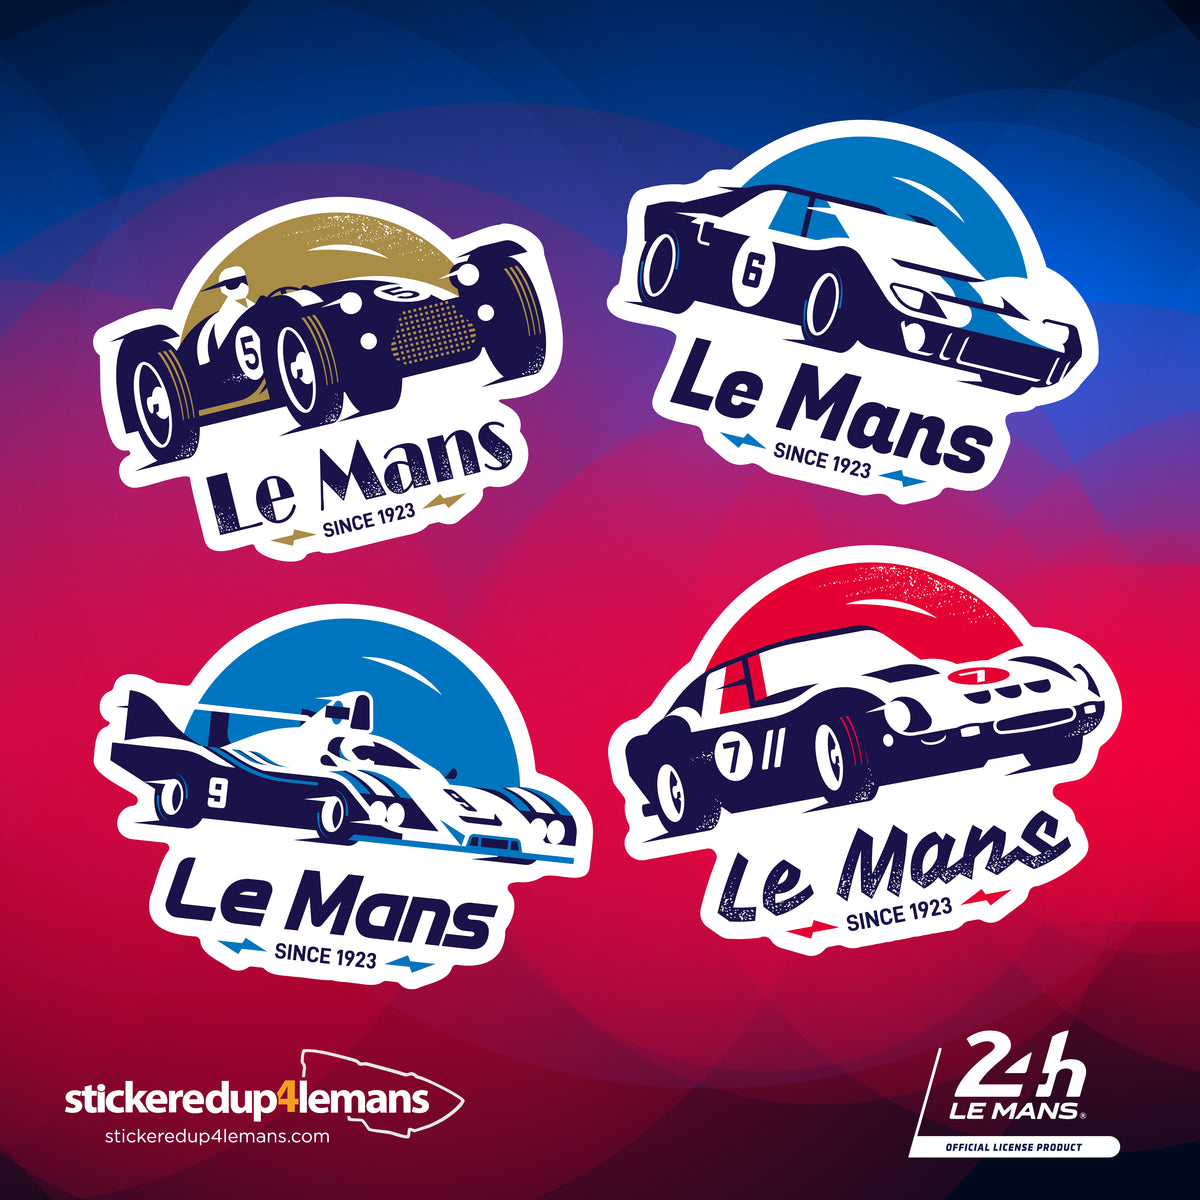 Official Le Mans Centenary Race Car Laptop Sticker Pack